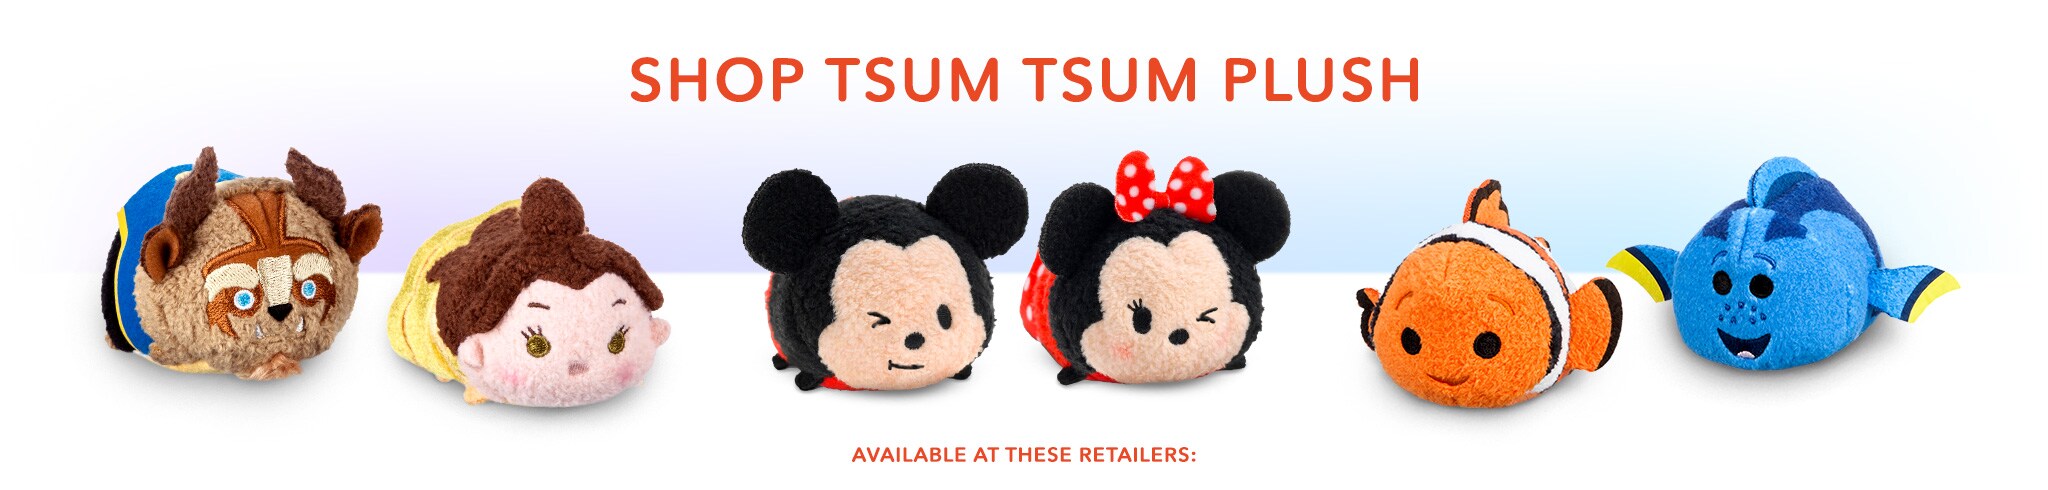 tsum tsum stuffed toys